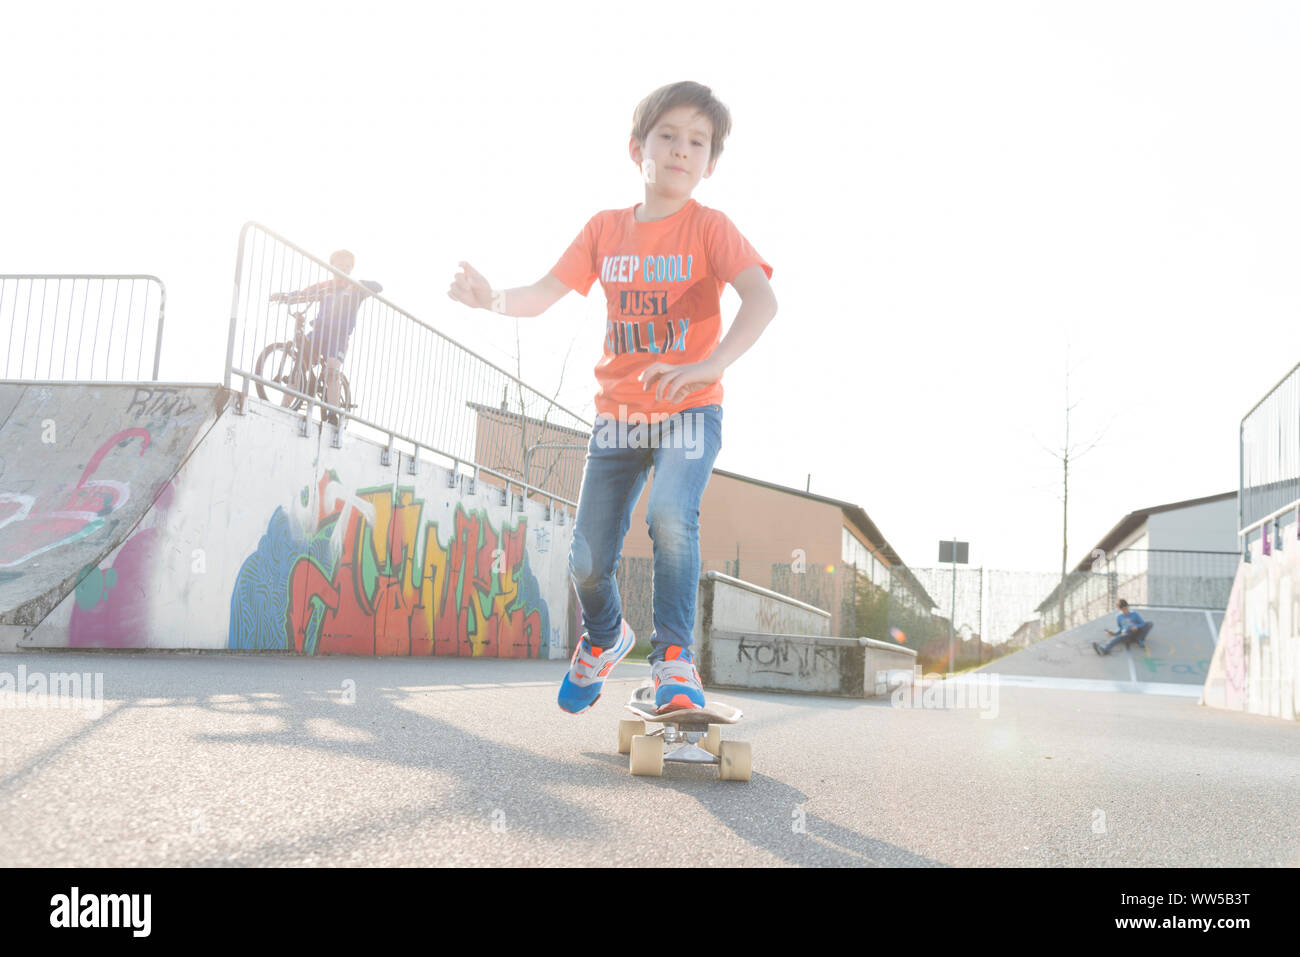 Chico en la camiseta naranja montando skateboard Foto de stock